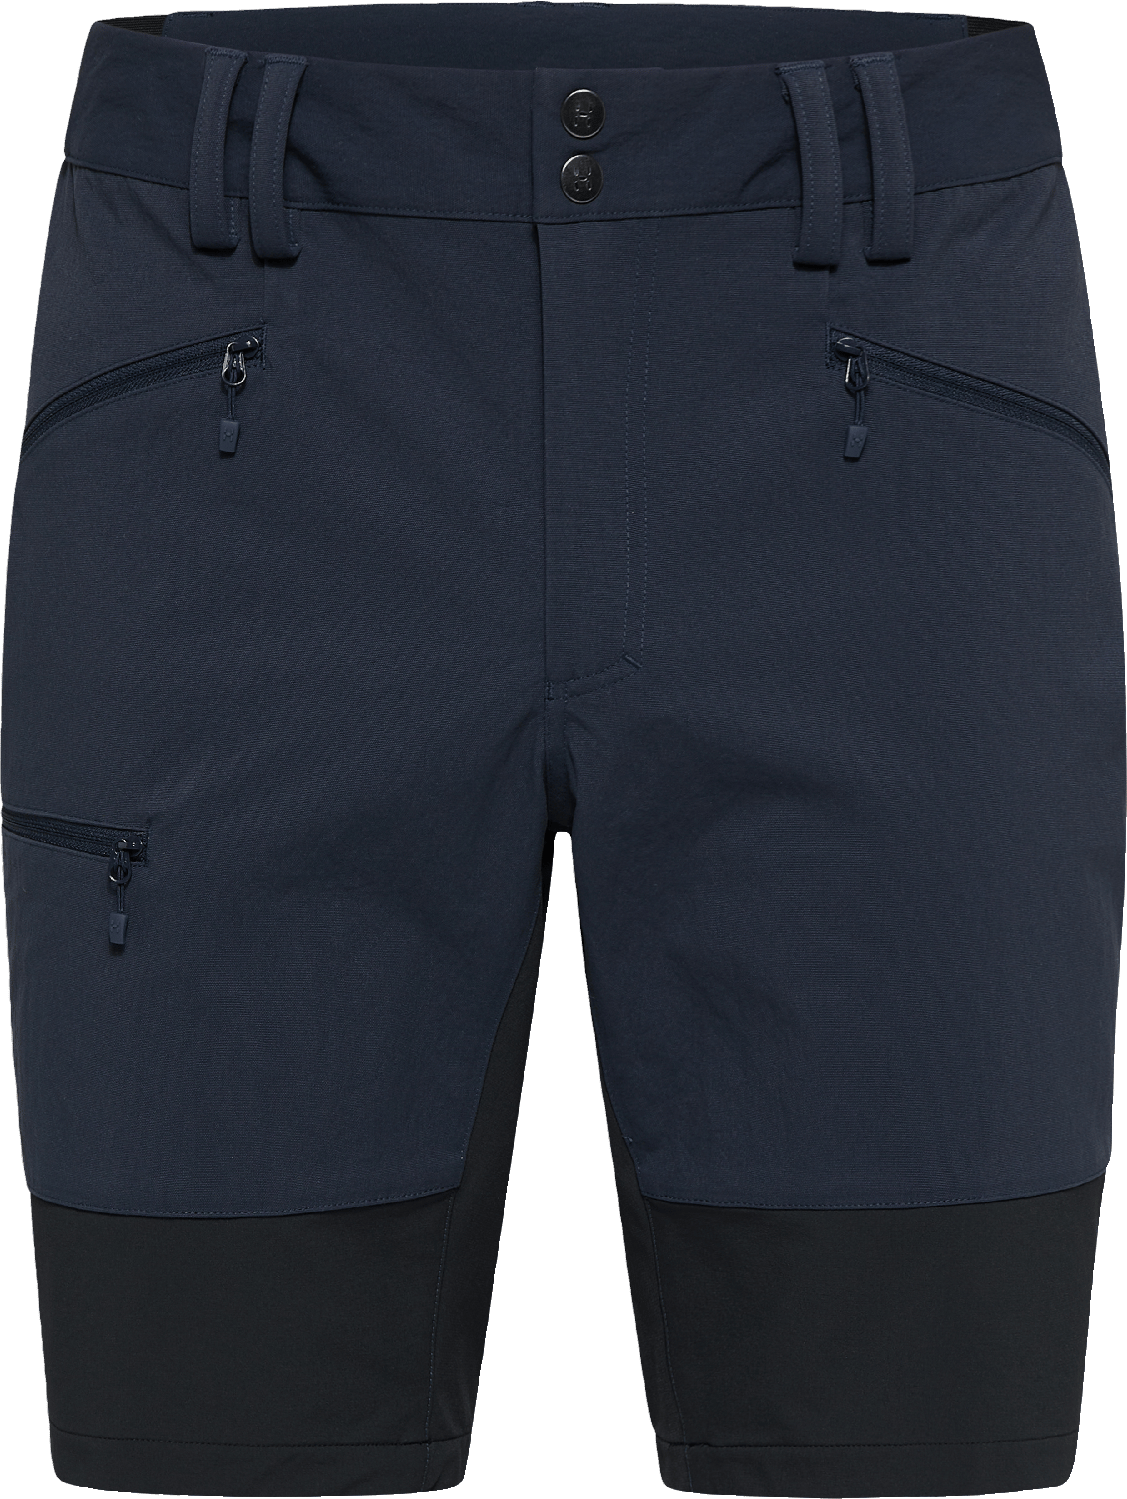 Men's Mid Slim Shorts Tarn Blue/True Black